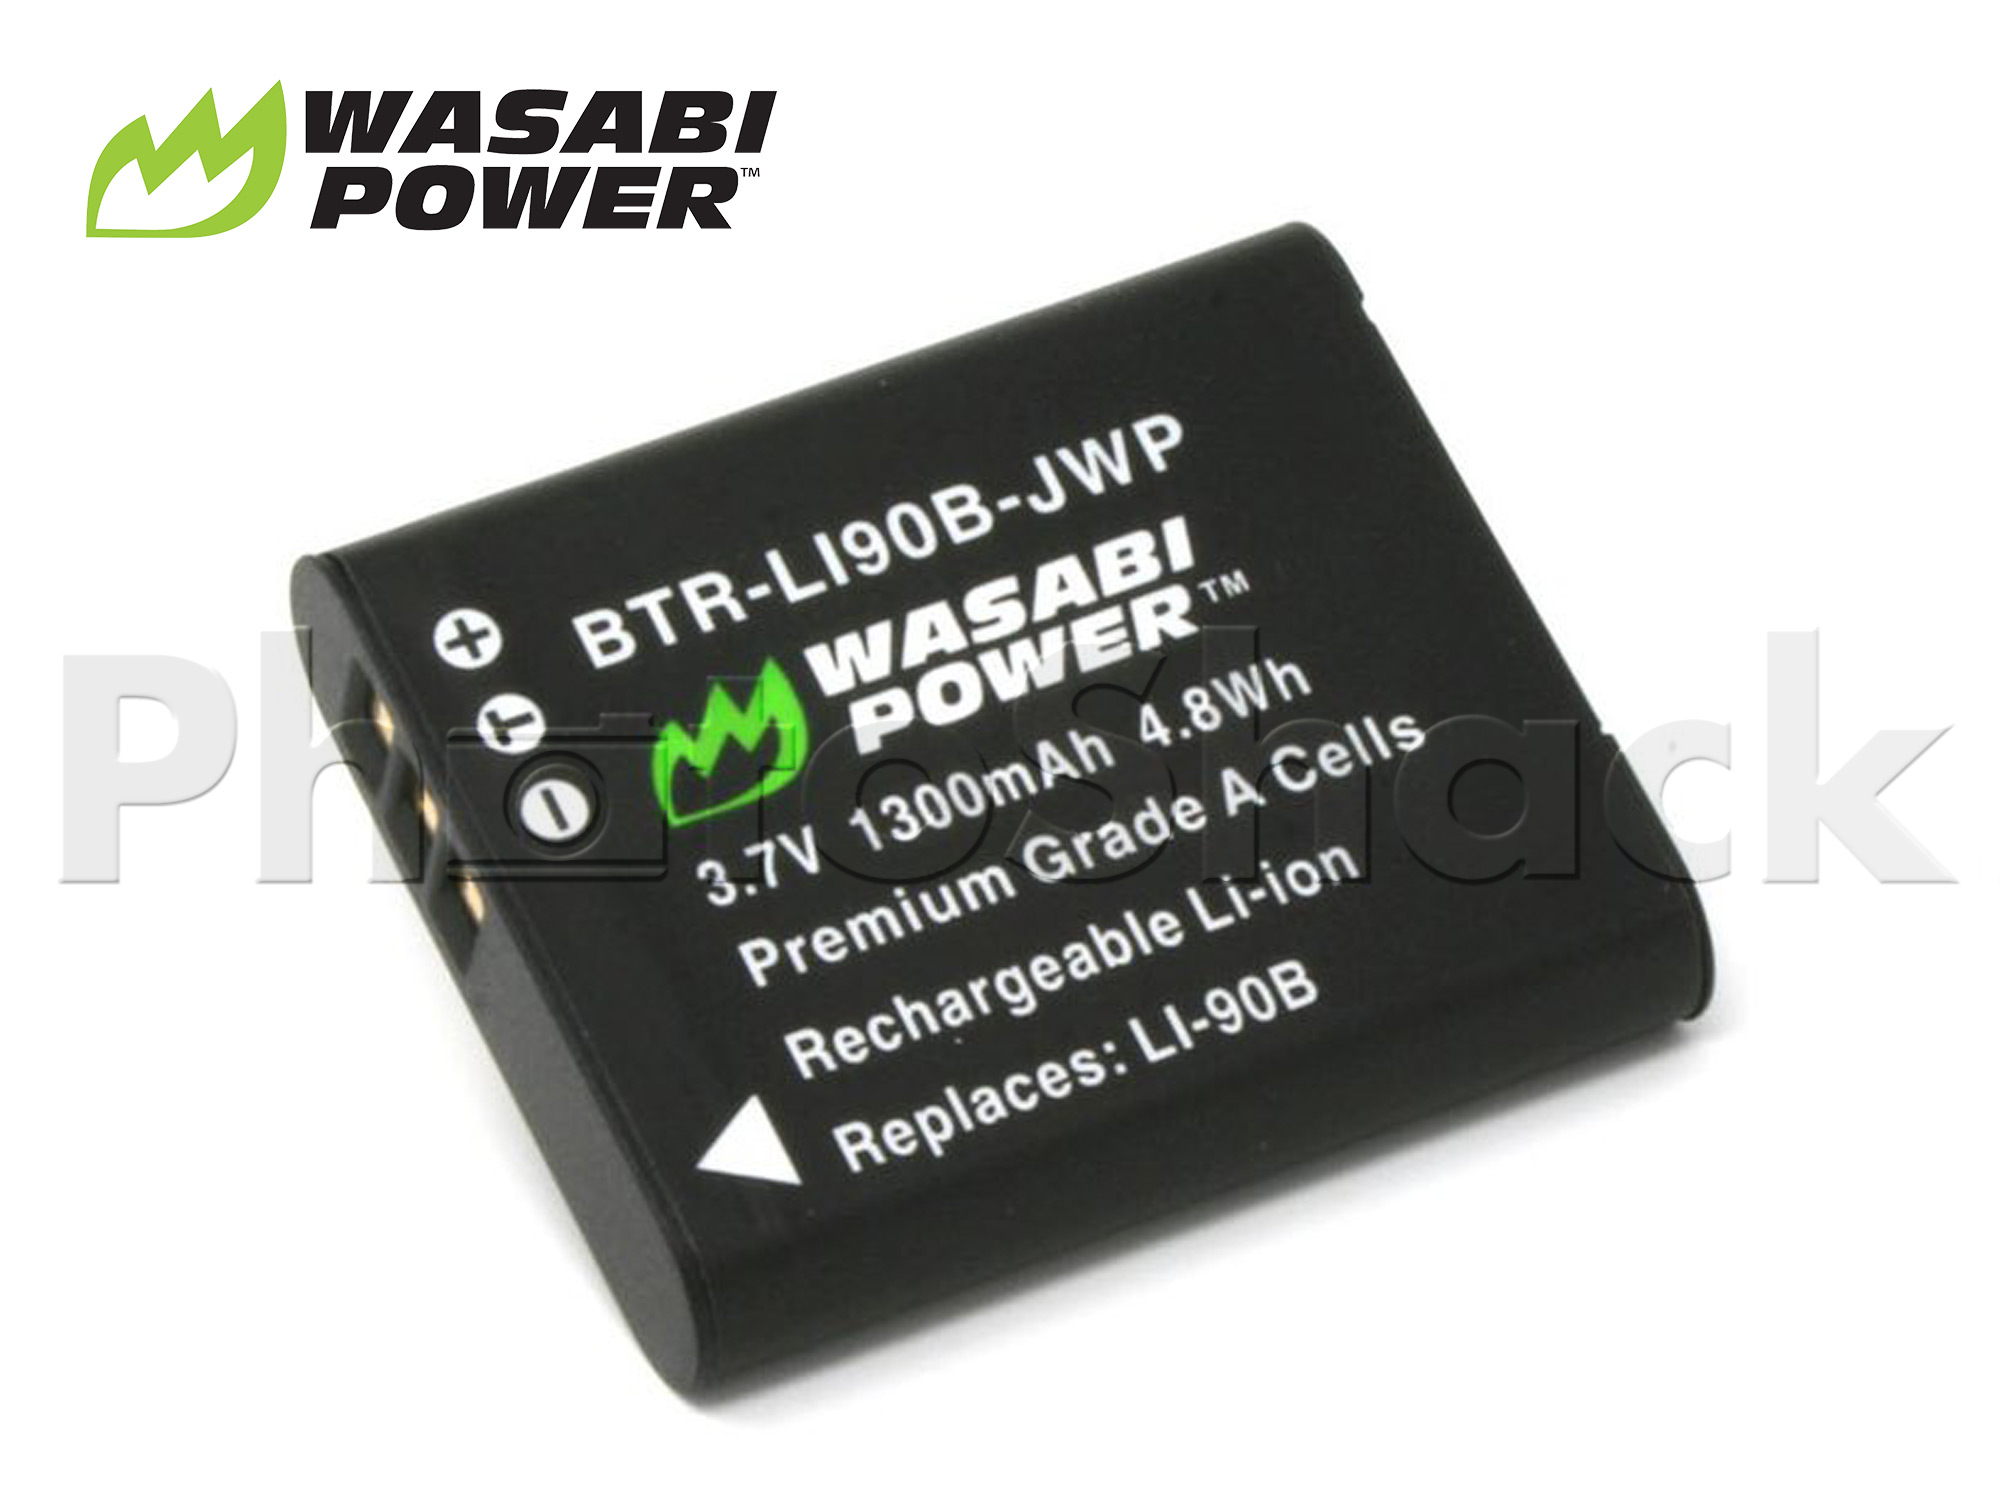 LI-90B Battery for Olympus - Wasabi Power